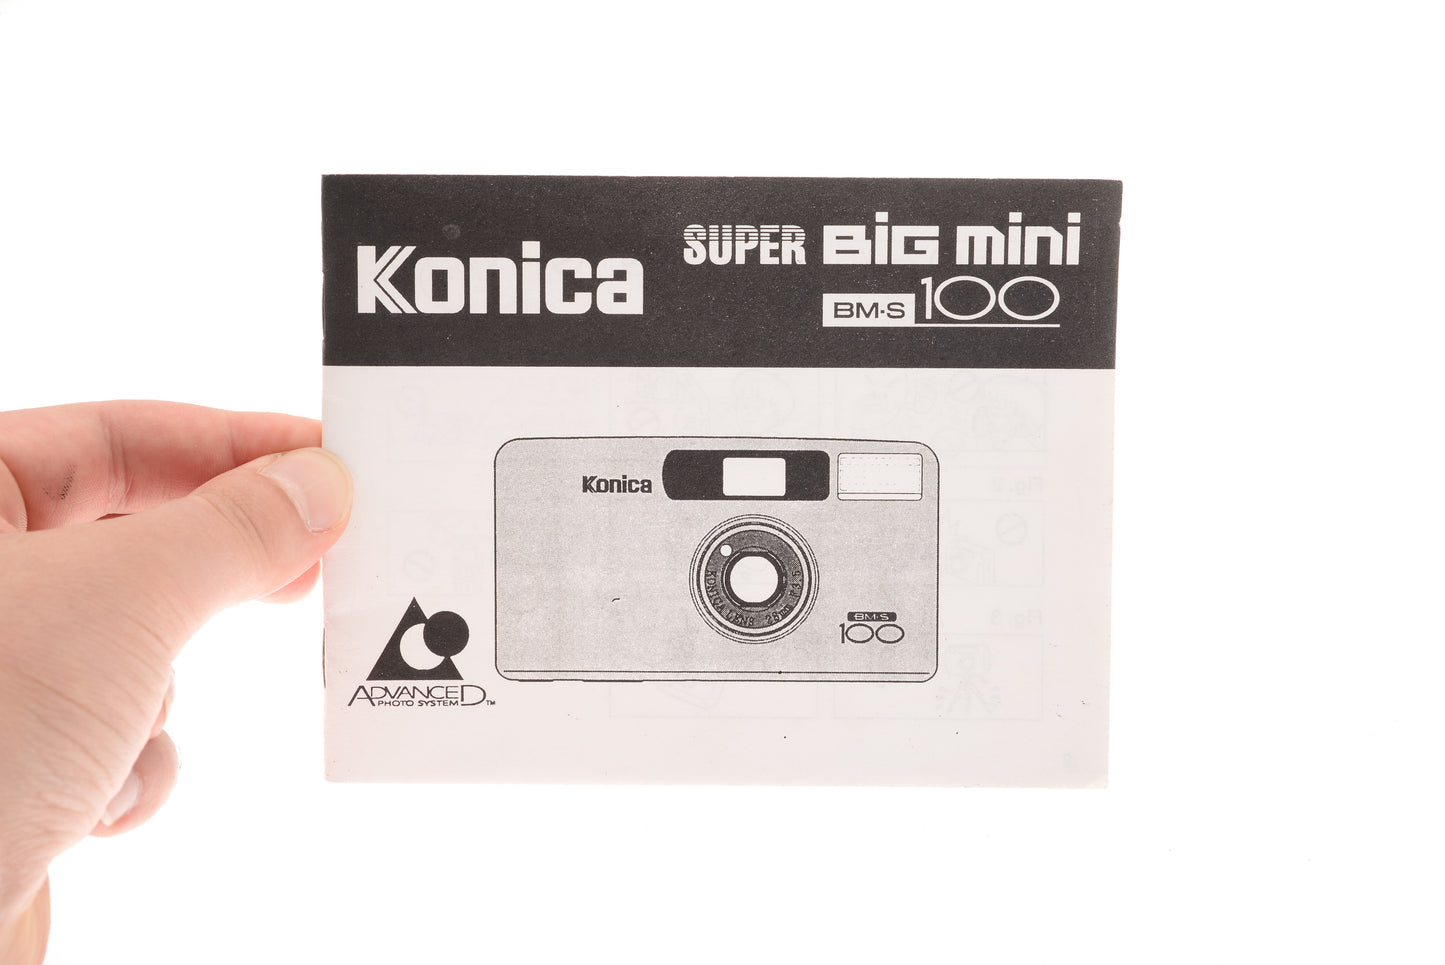 Konica Super Big Mini BM-S 100 Instruction Manual